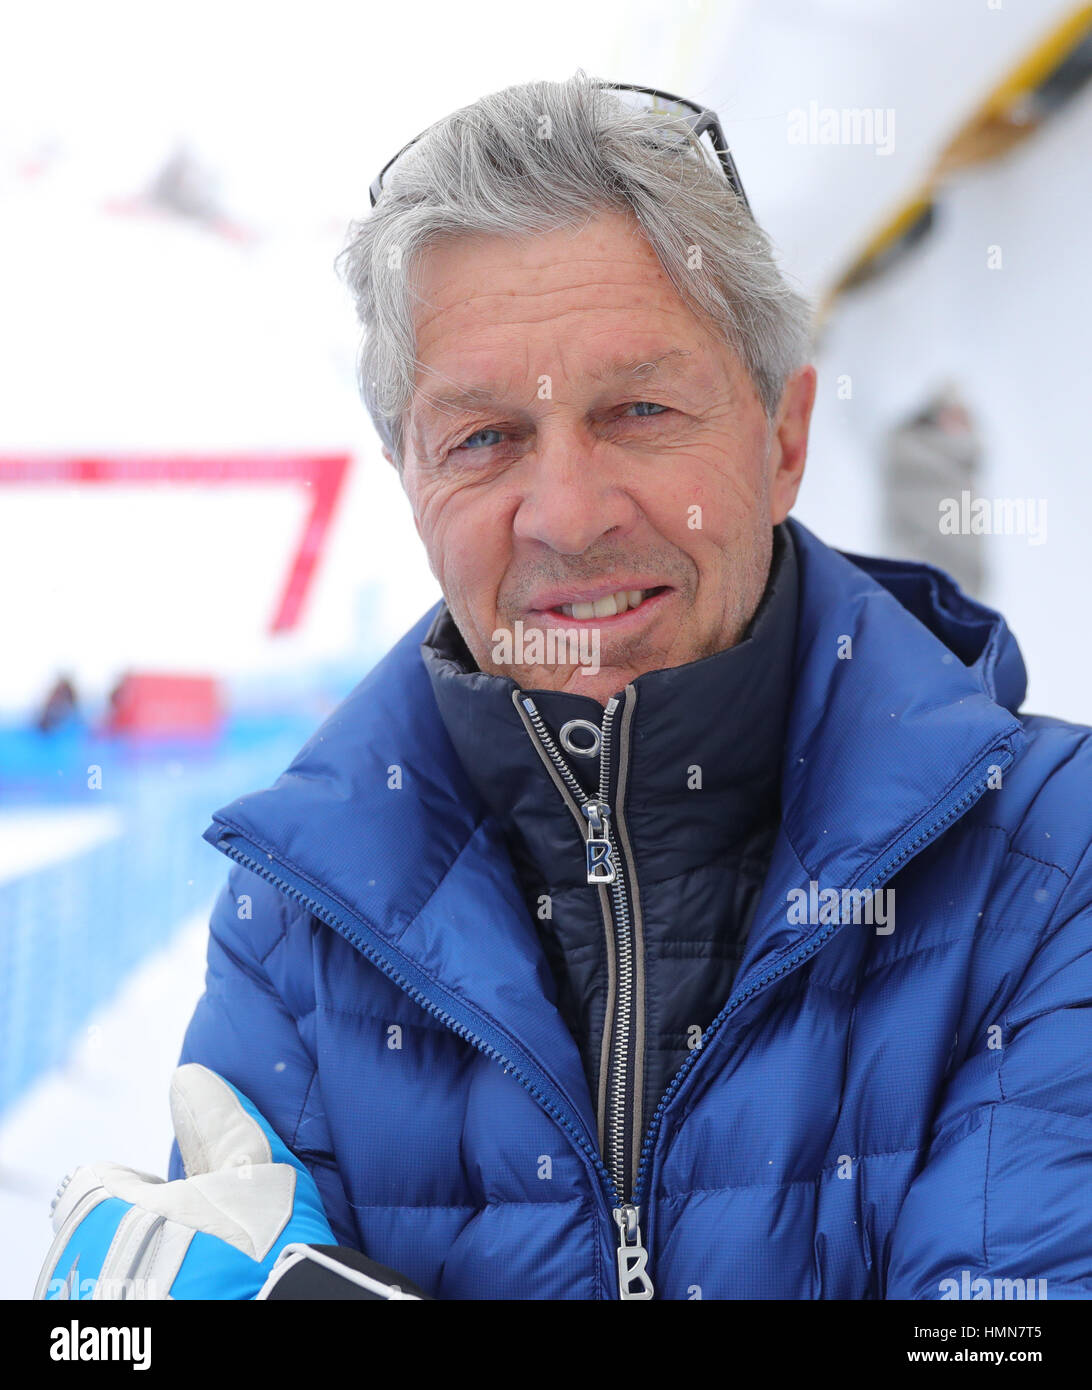 Bernhard Russi Switzerland Olympic Downhill Stockfotos und -bilder Kaufen -  Alamy